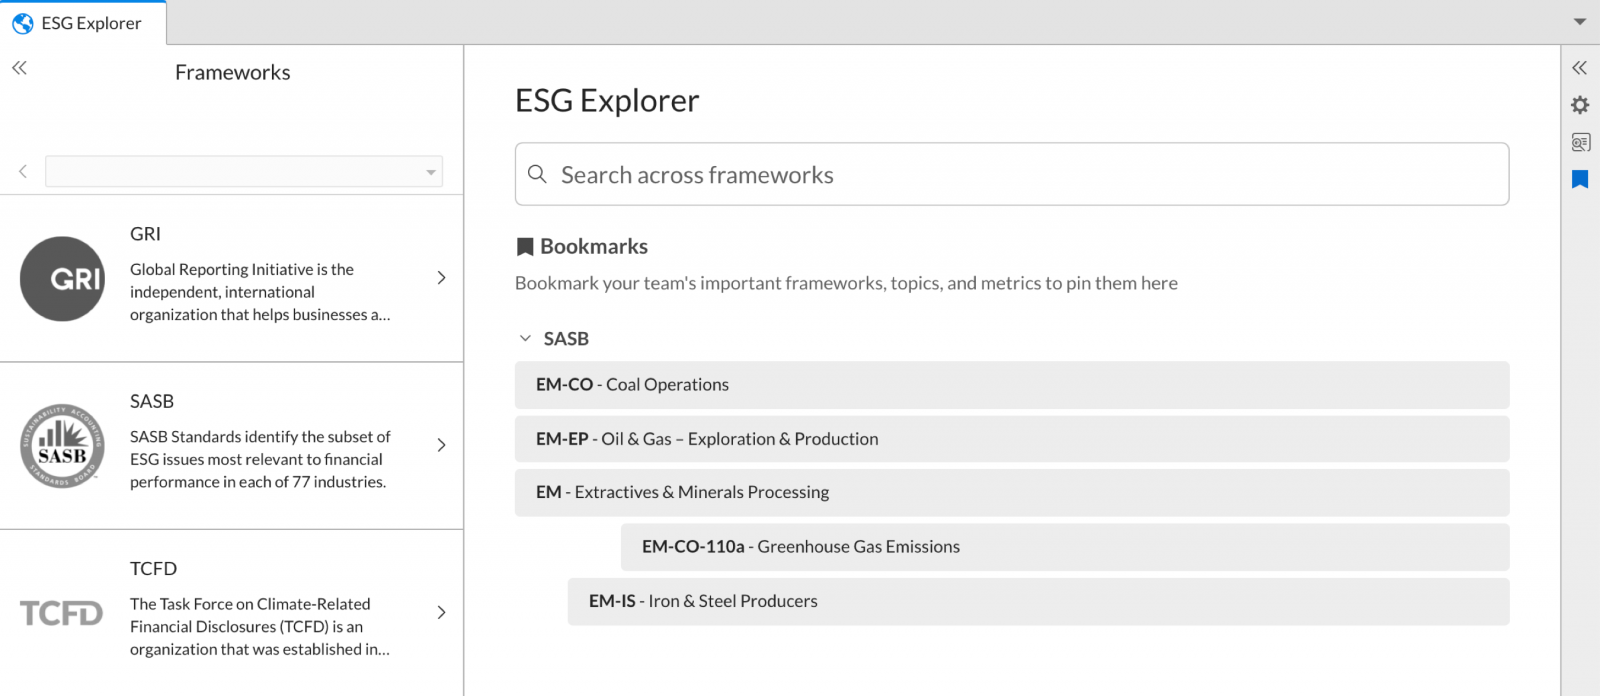 ESG explorer